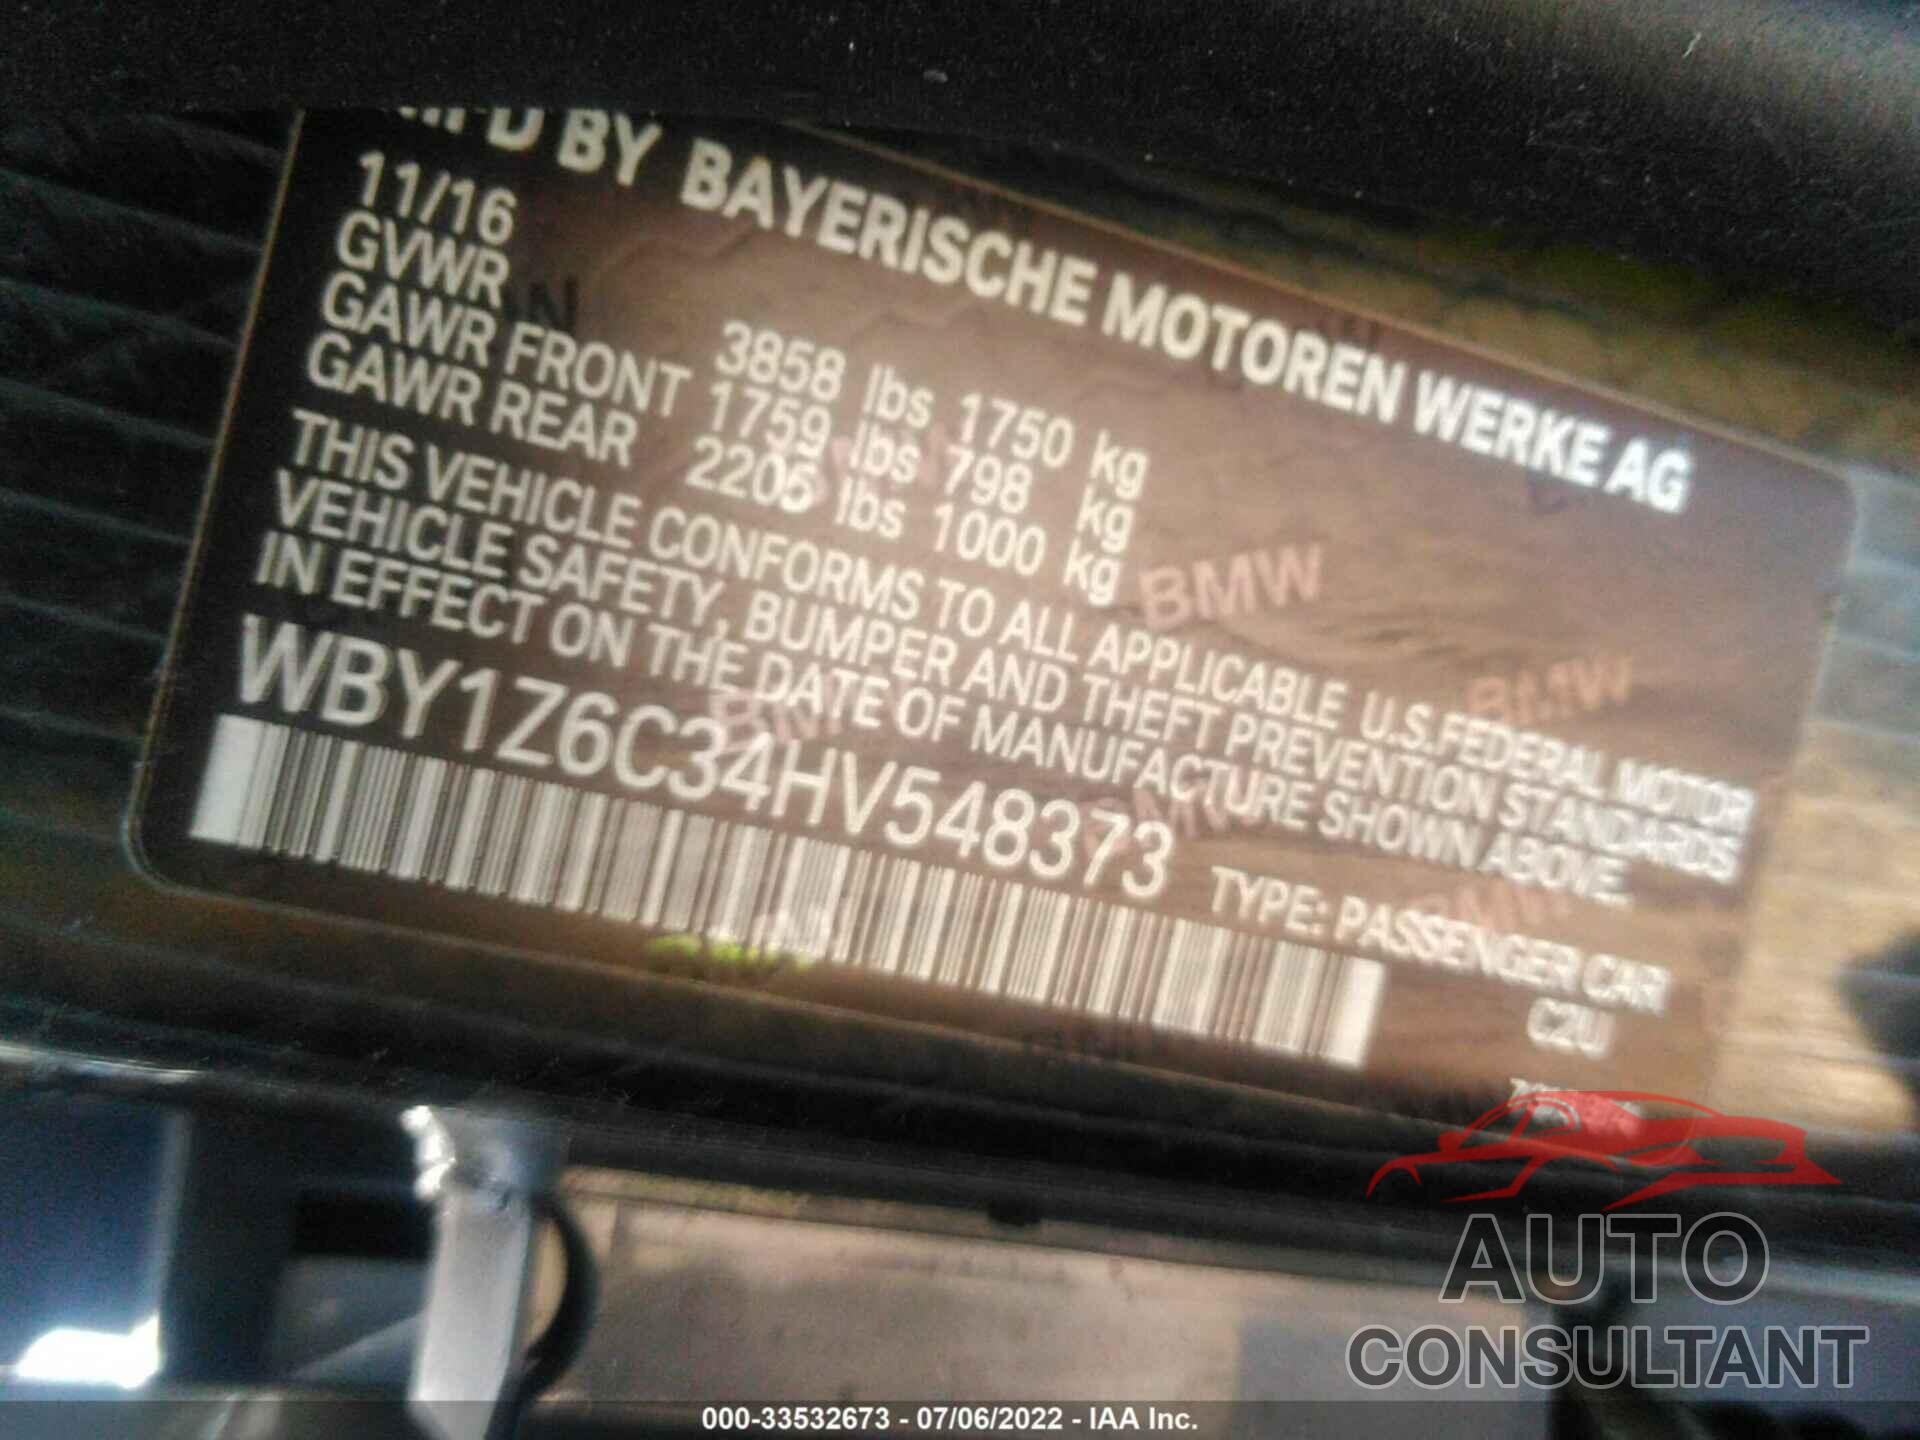 BMW I3 2017 - WBY1Z6C34HV548373